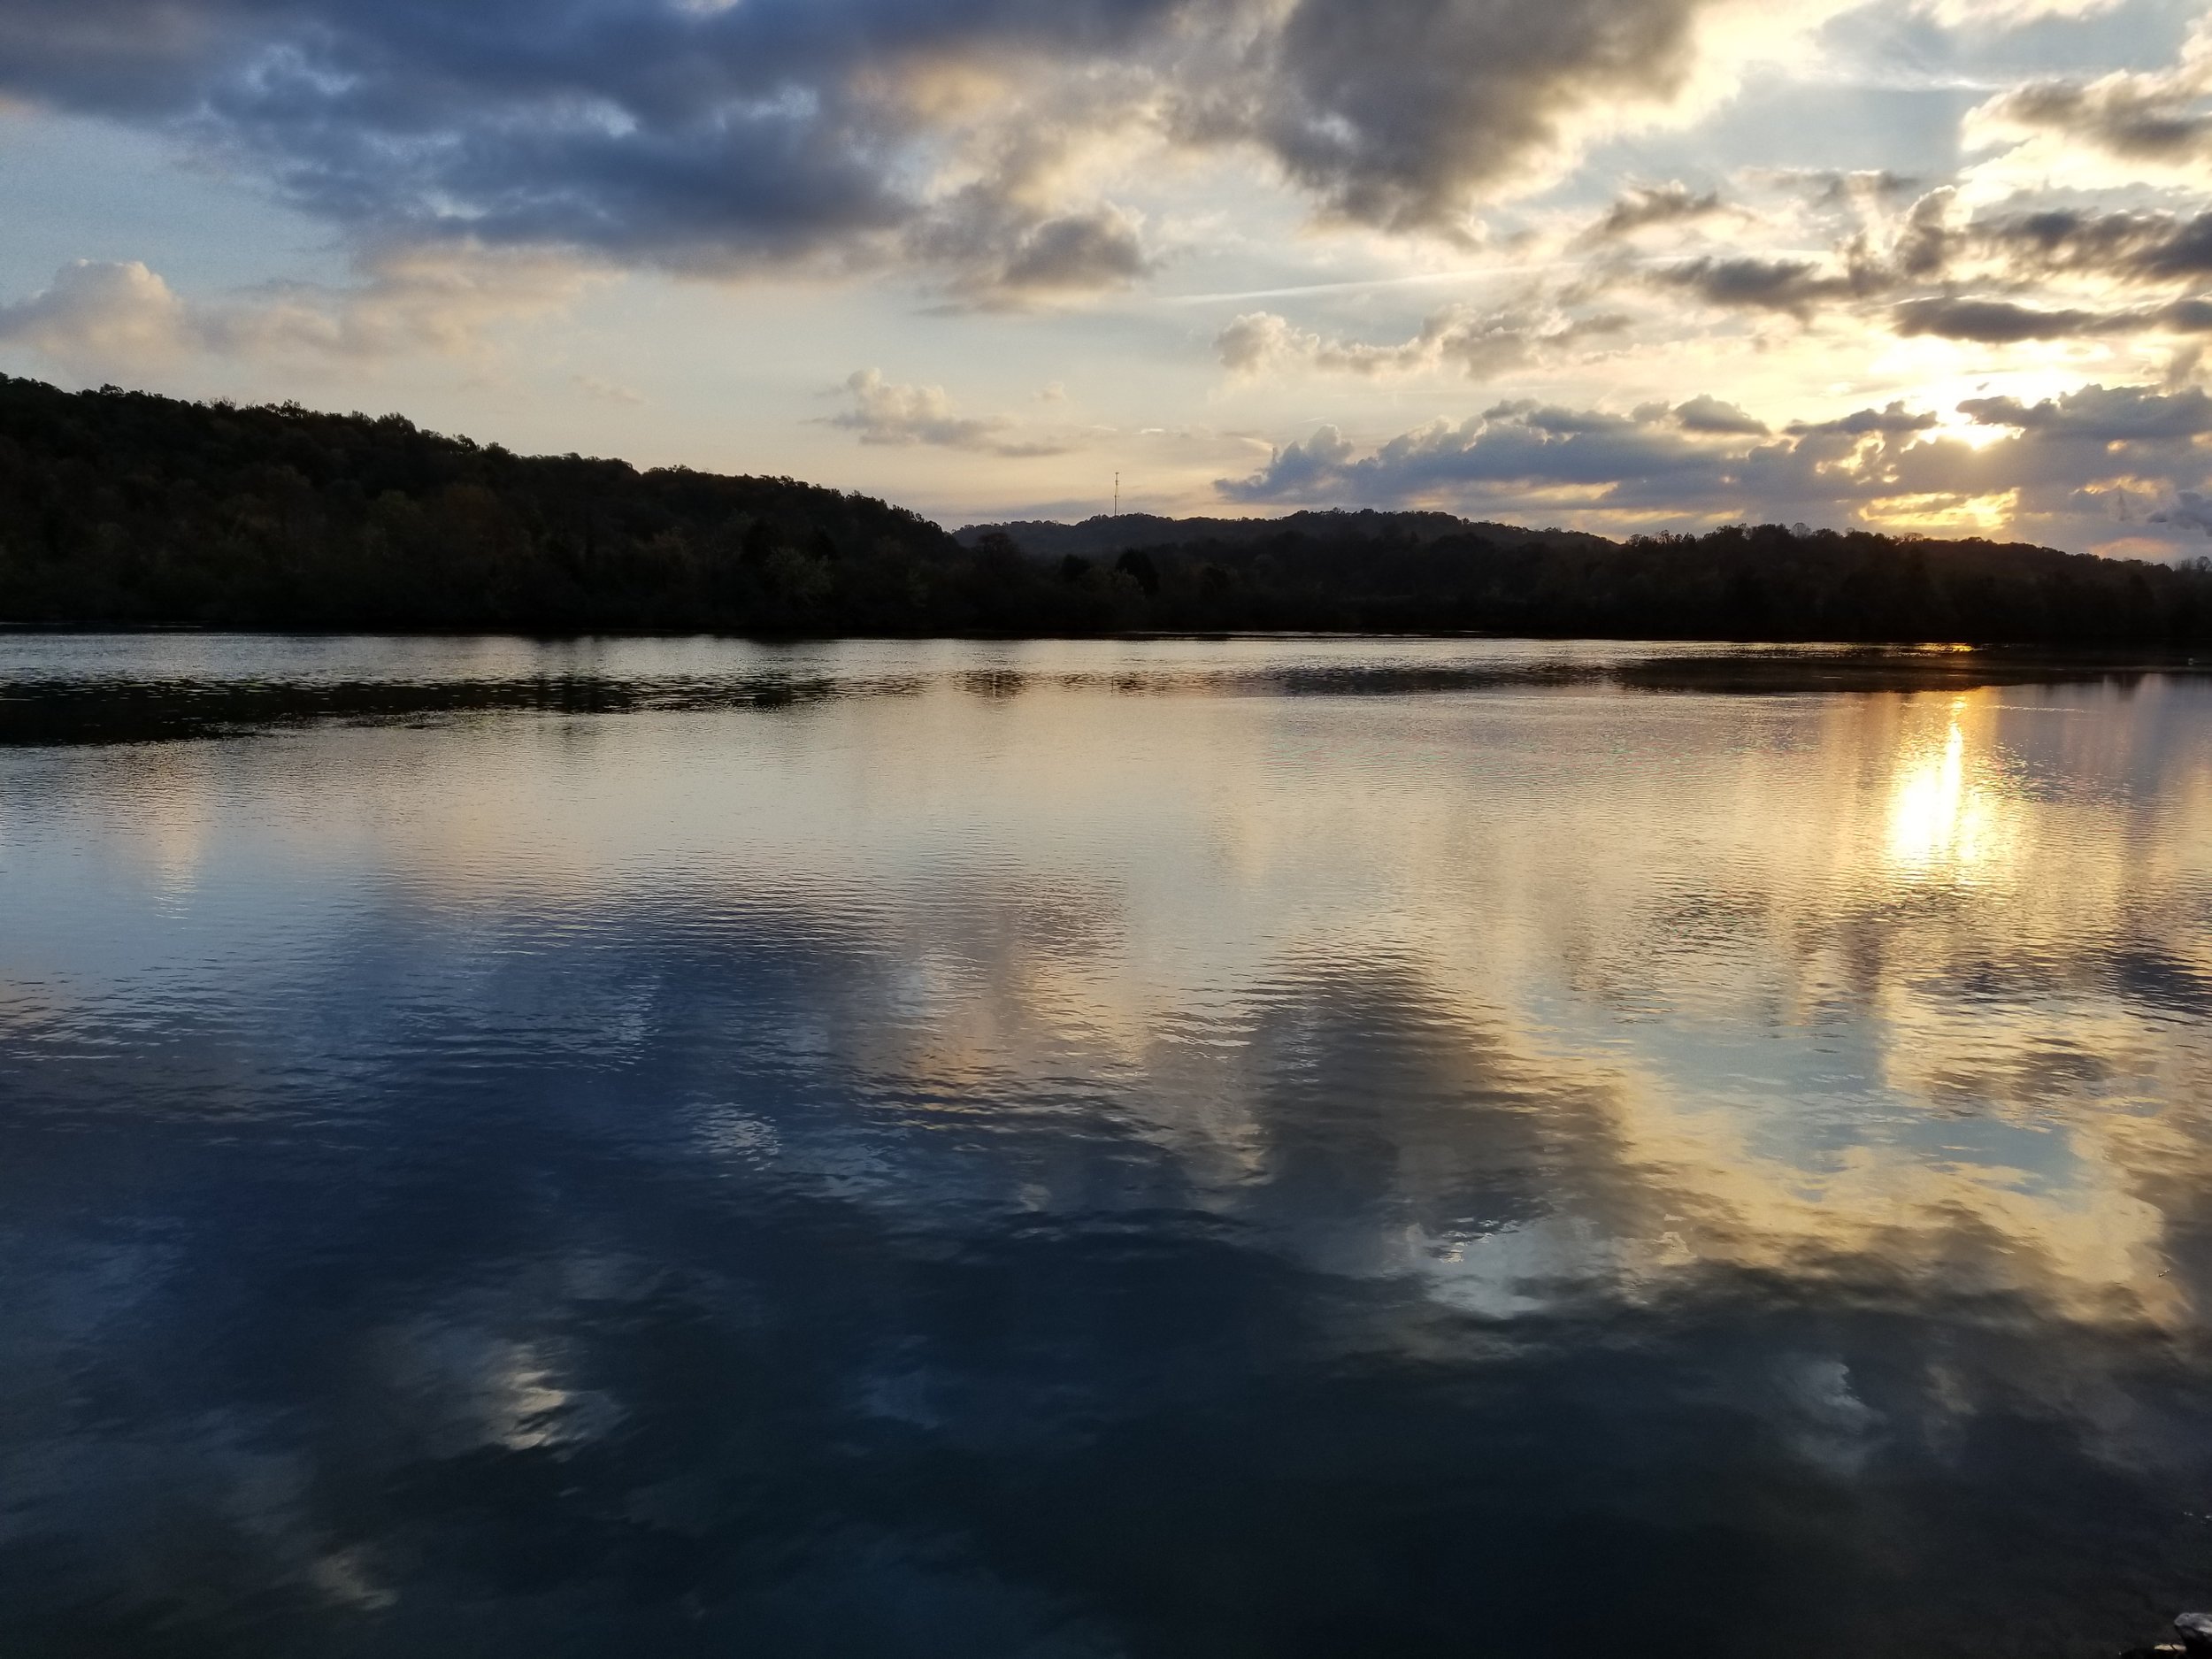 Sunrise at Melton Hill Lake Park